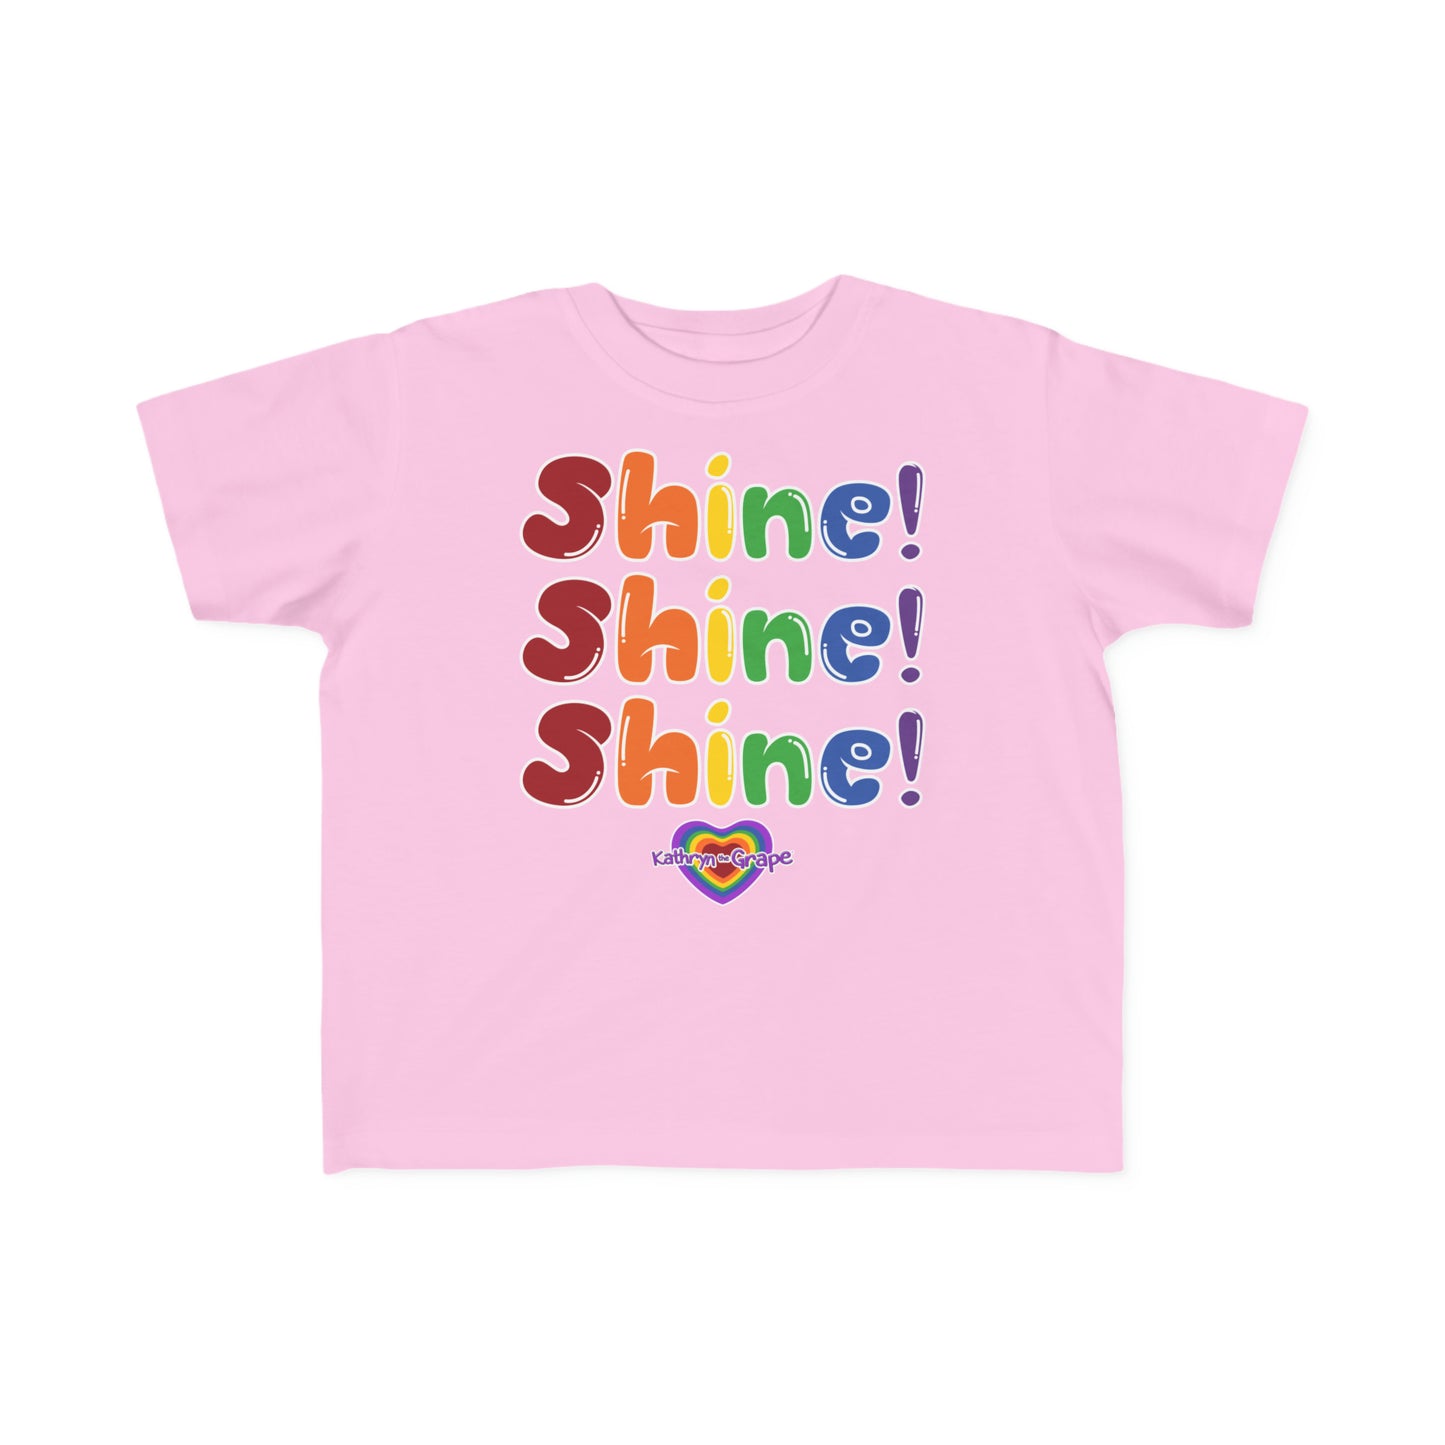 Kathryn the Grape Shine Shine Shine Toddler's Fine Jersey Tee